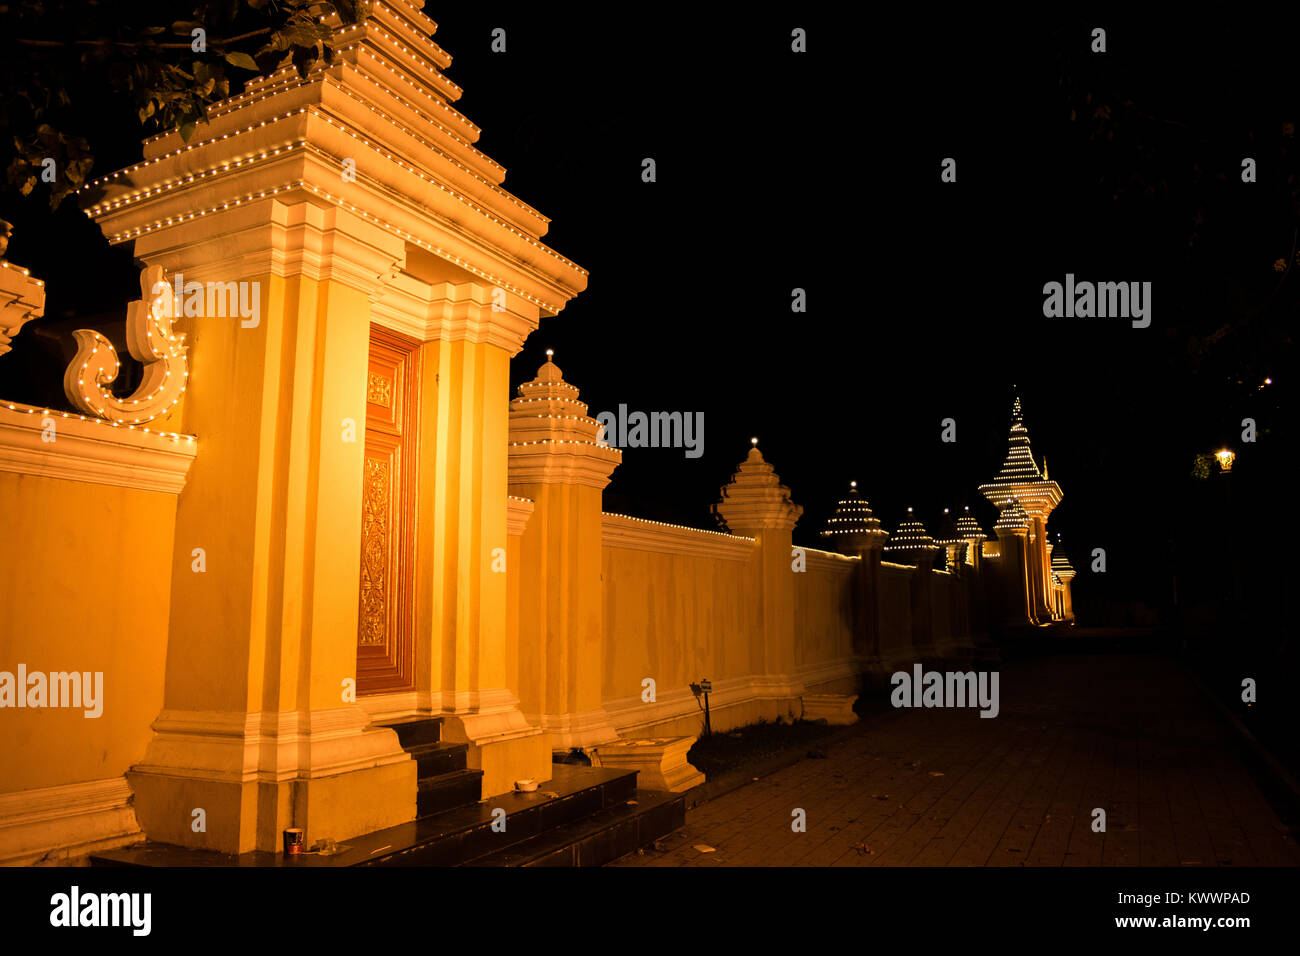 Un mur jaune orange allumé et la porte de nuit à Phnom Penh au Cambodge, en Asie du sud-est, à proximité de Sisowath Quay et du fleuve Tonle Sap Banque D'Images